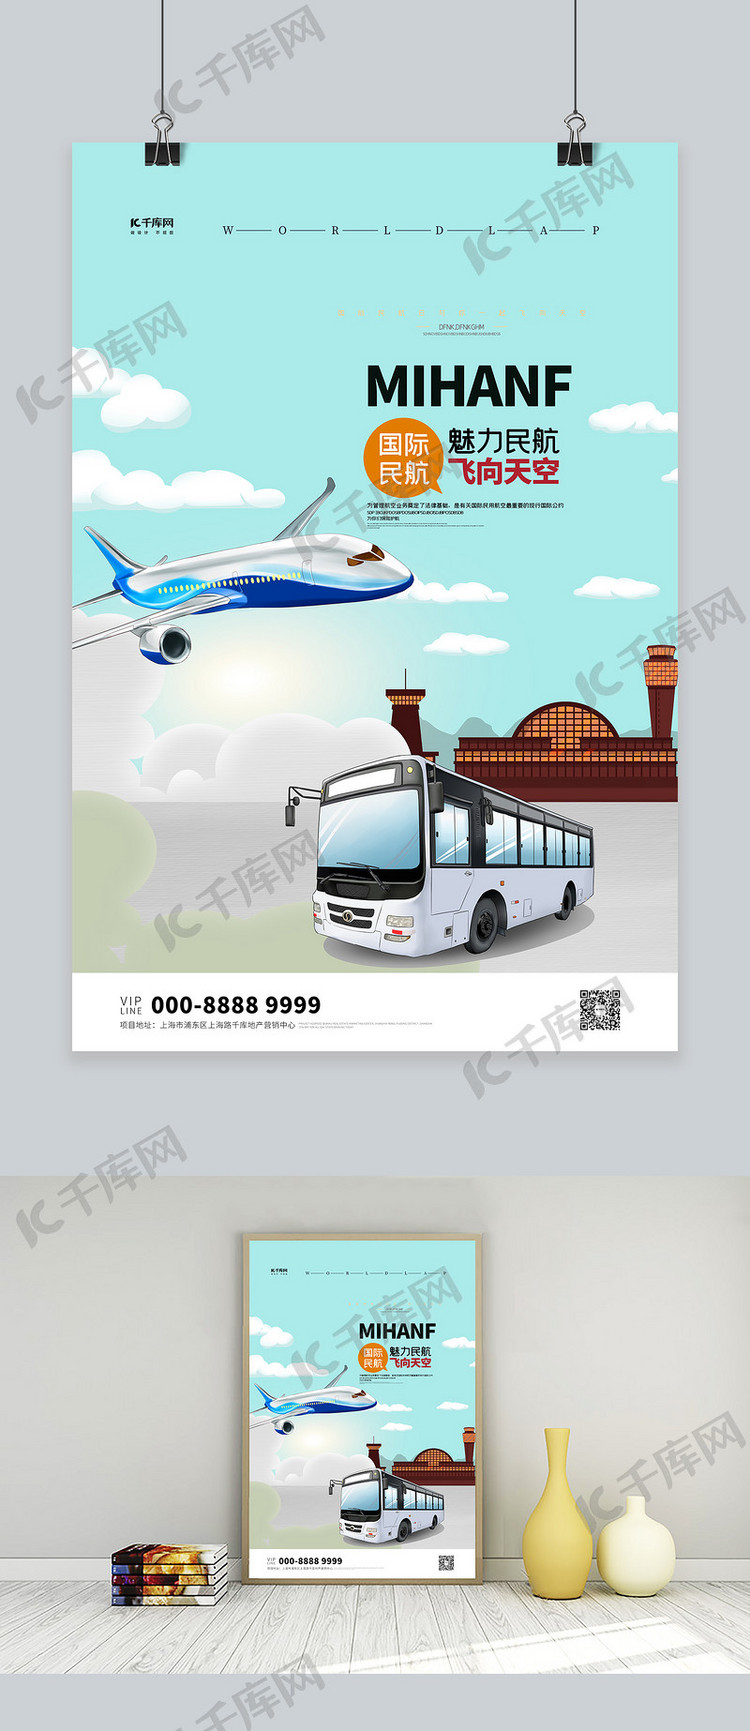 国际民航日飞机浅蓝色创意海报